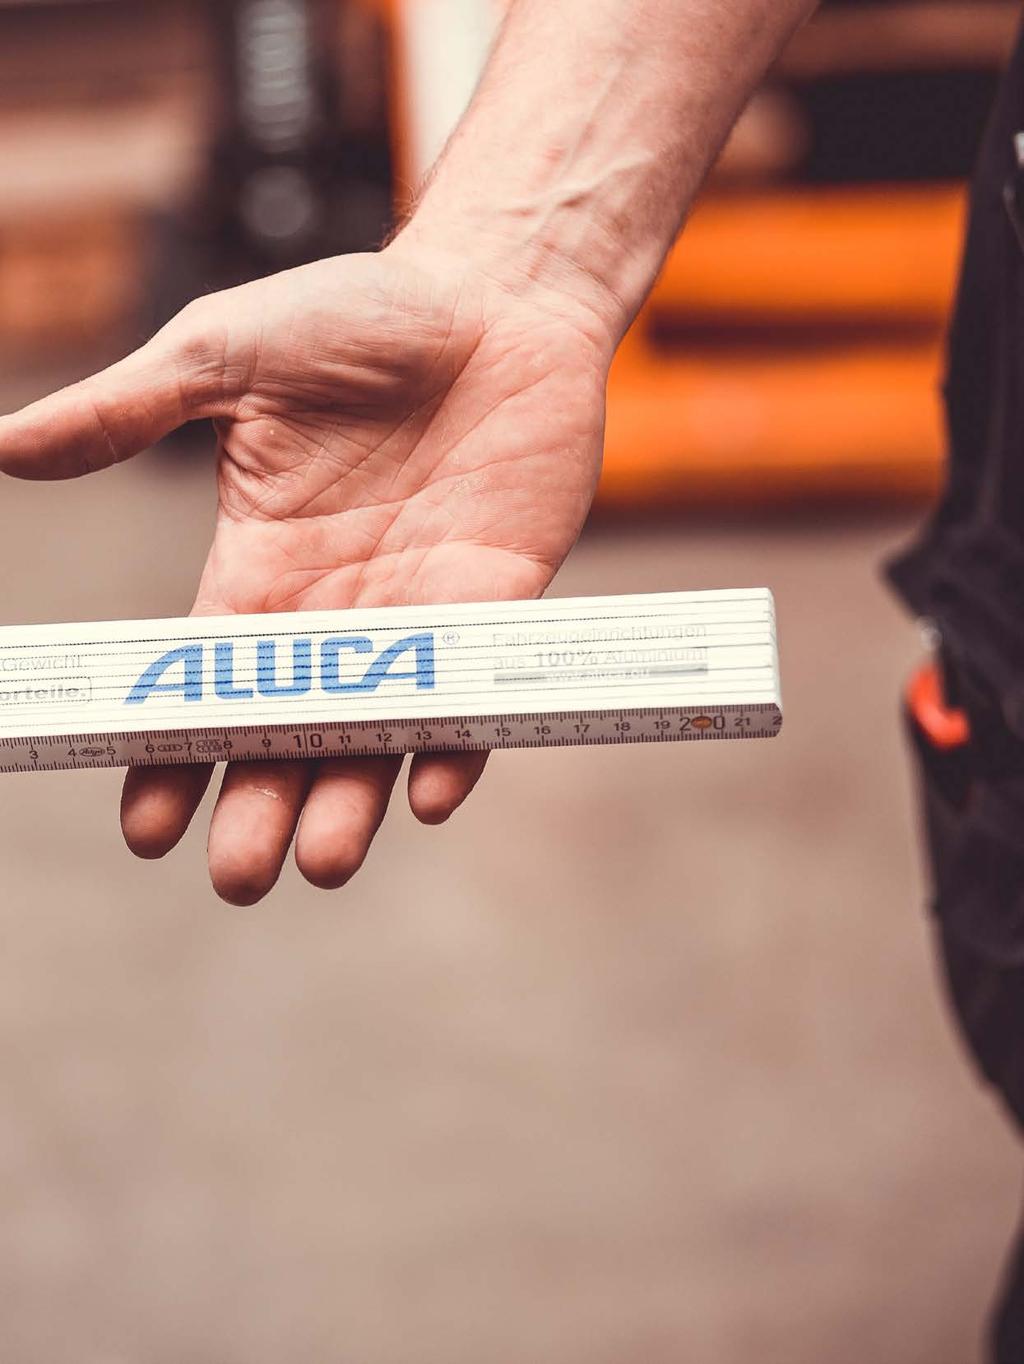 Die Marke ALUCA Was ist eine Marke? Eine Marke ist rein rechtlich ein Warenzeichen, ein Name, Zeichen oder Symbol, mit dem Produkte gekennzeichnet werden, um ihre Einmaligkeit auszudrücken.